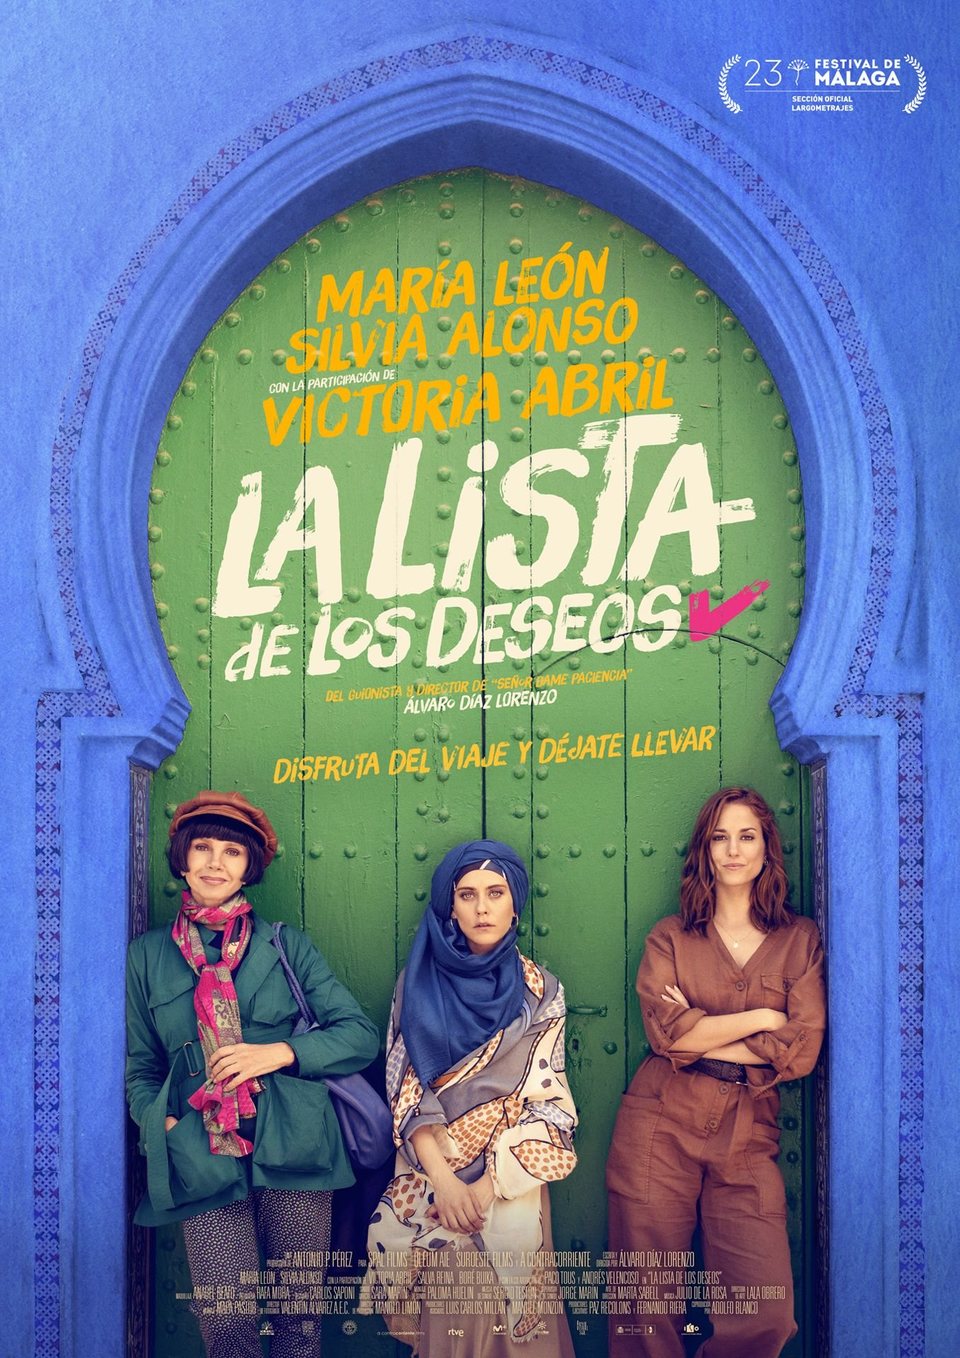 Poster of La lista de los deseos - España